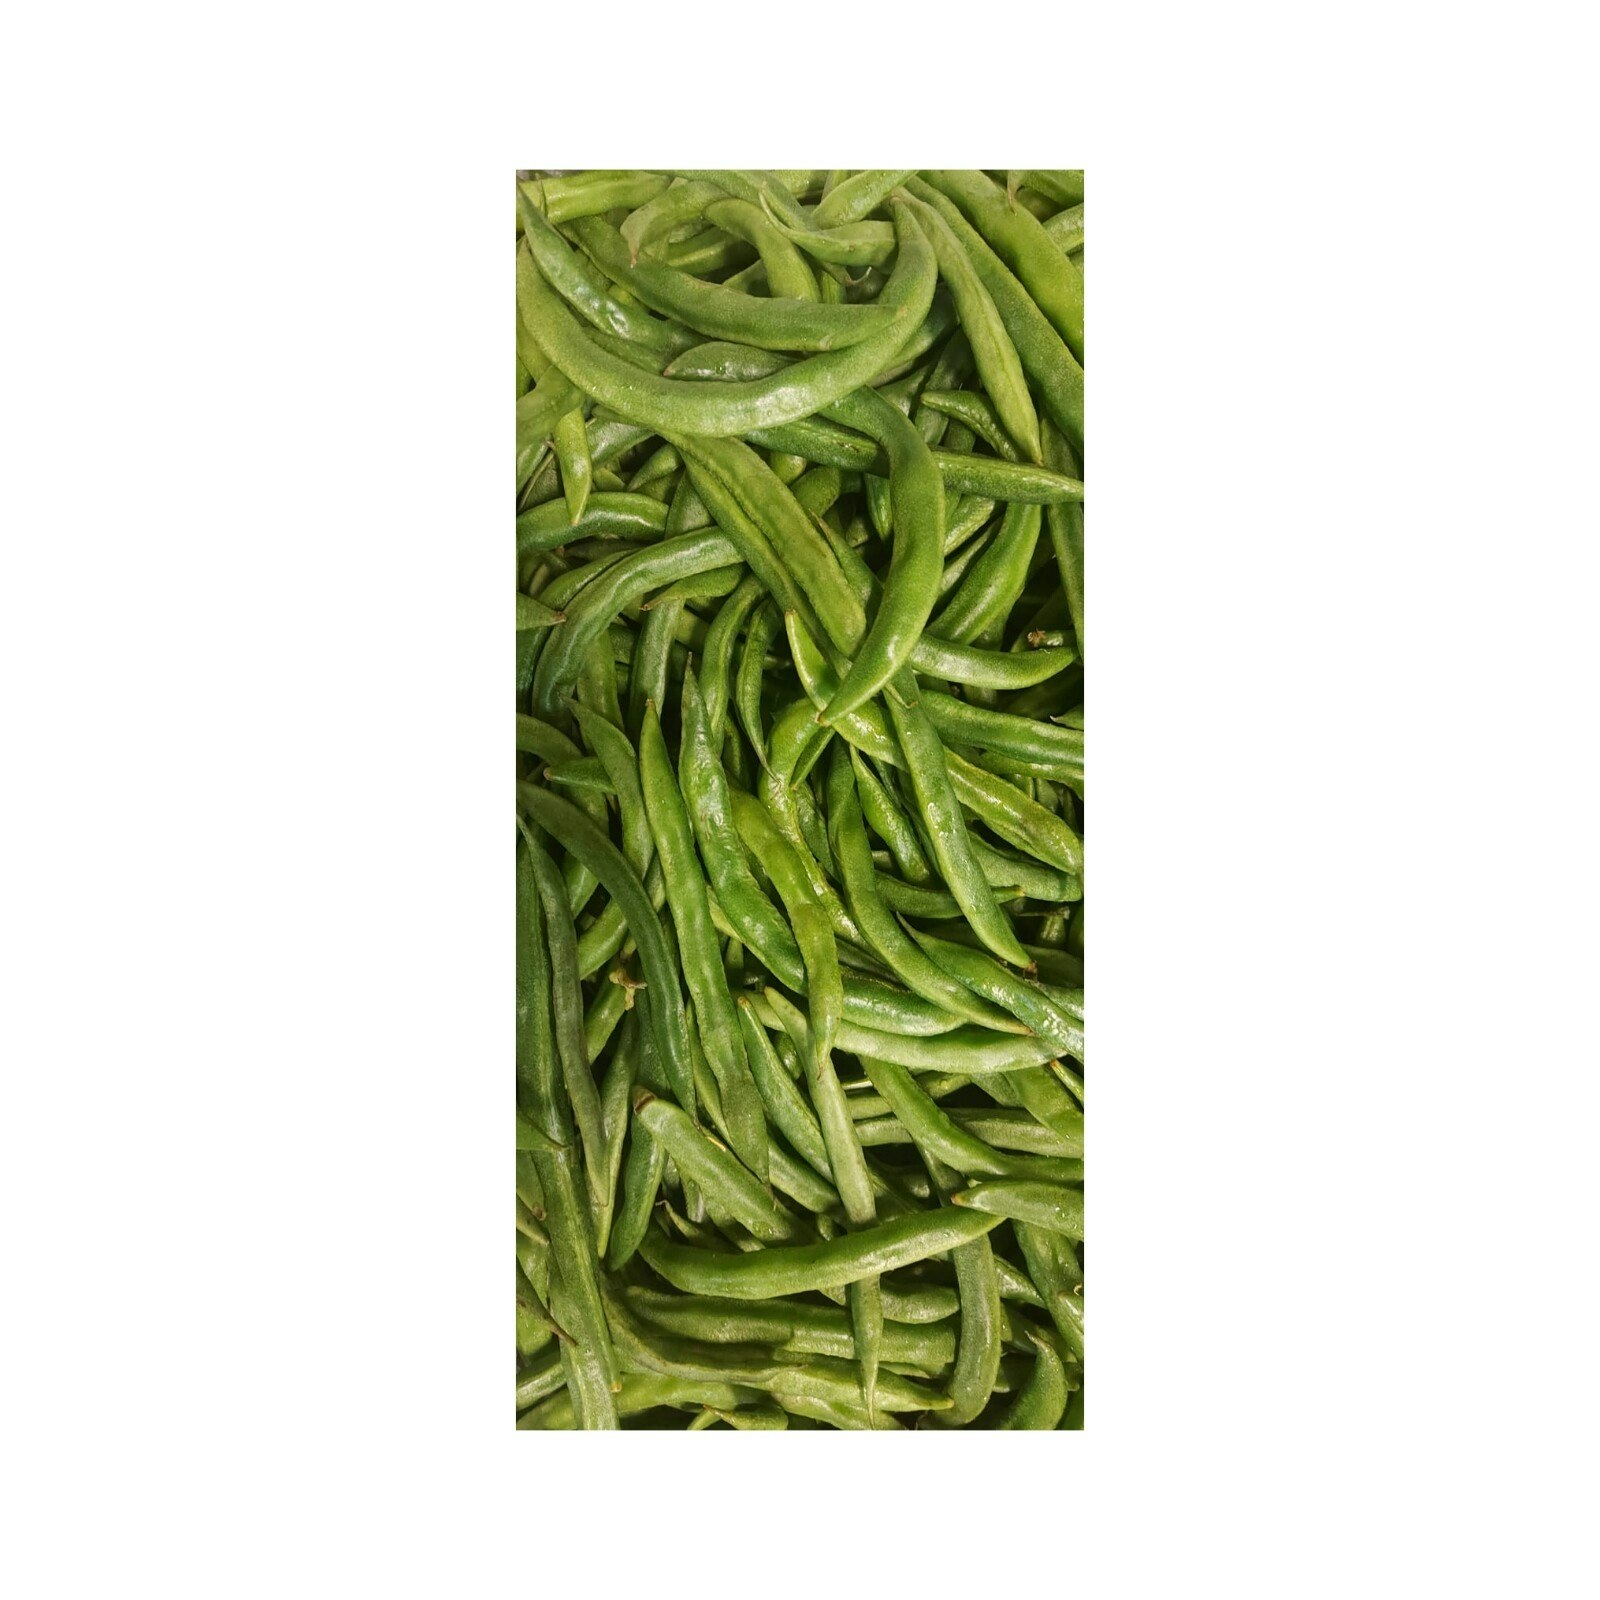 Fresh Ghevda Papdi(beans) 500g